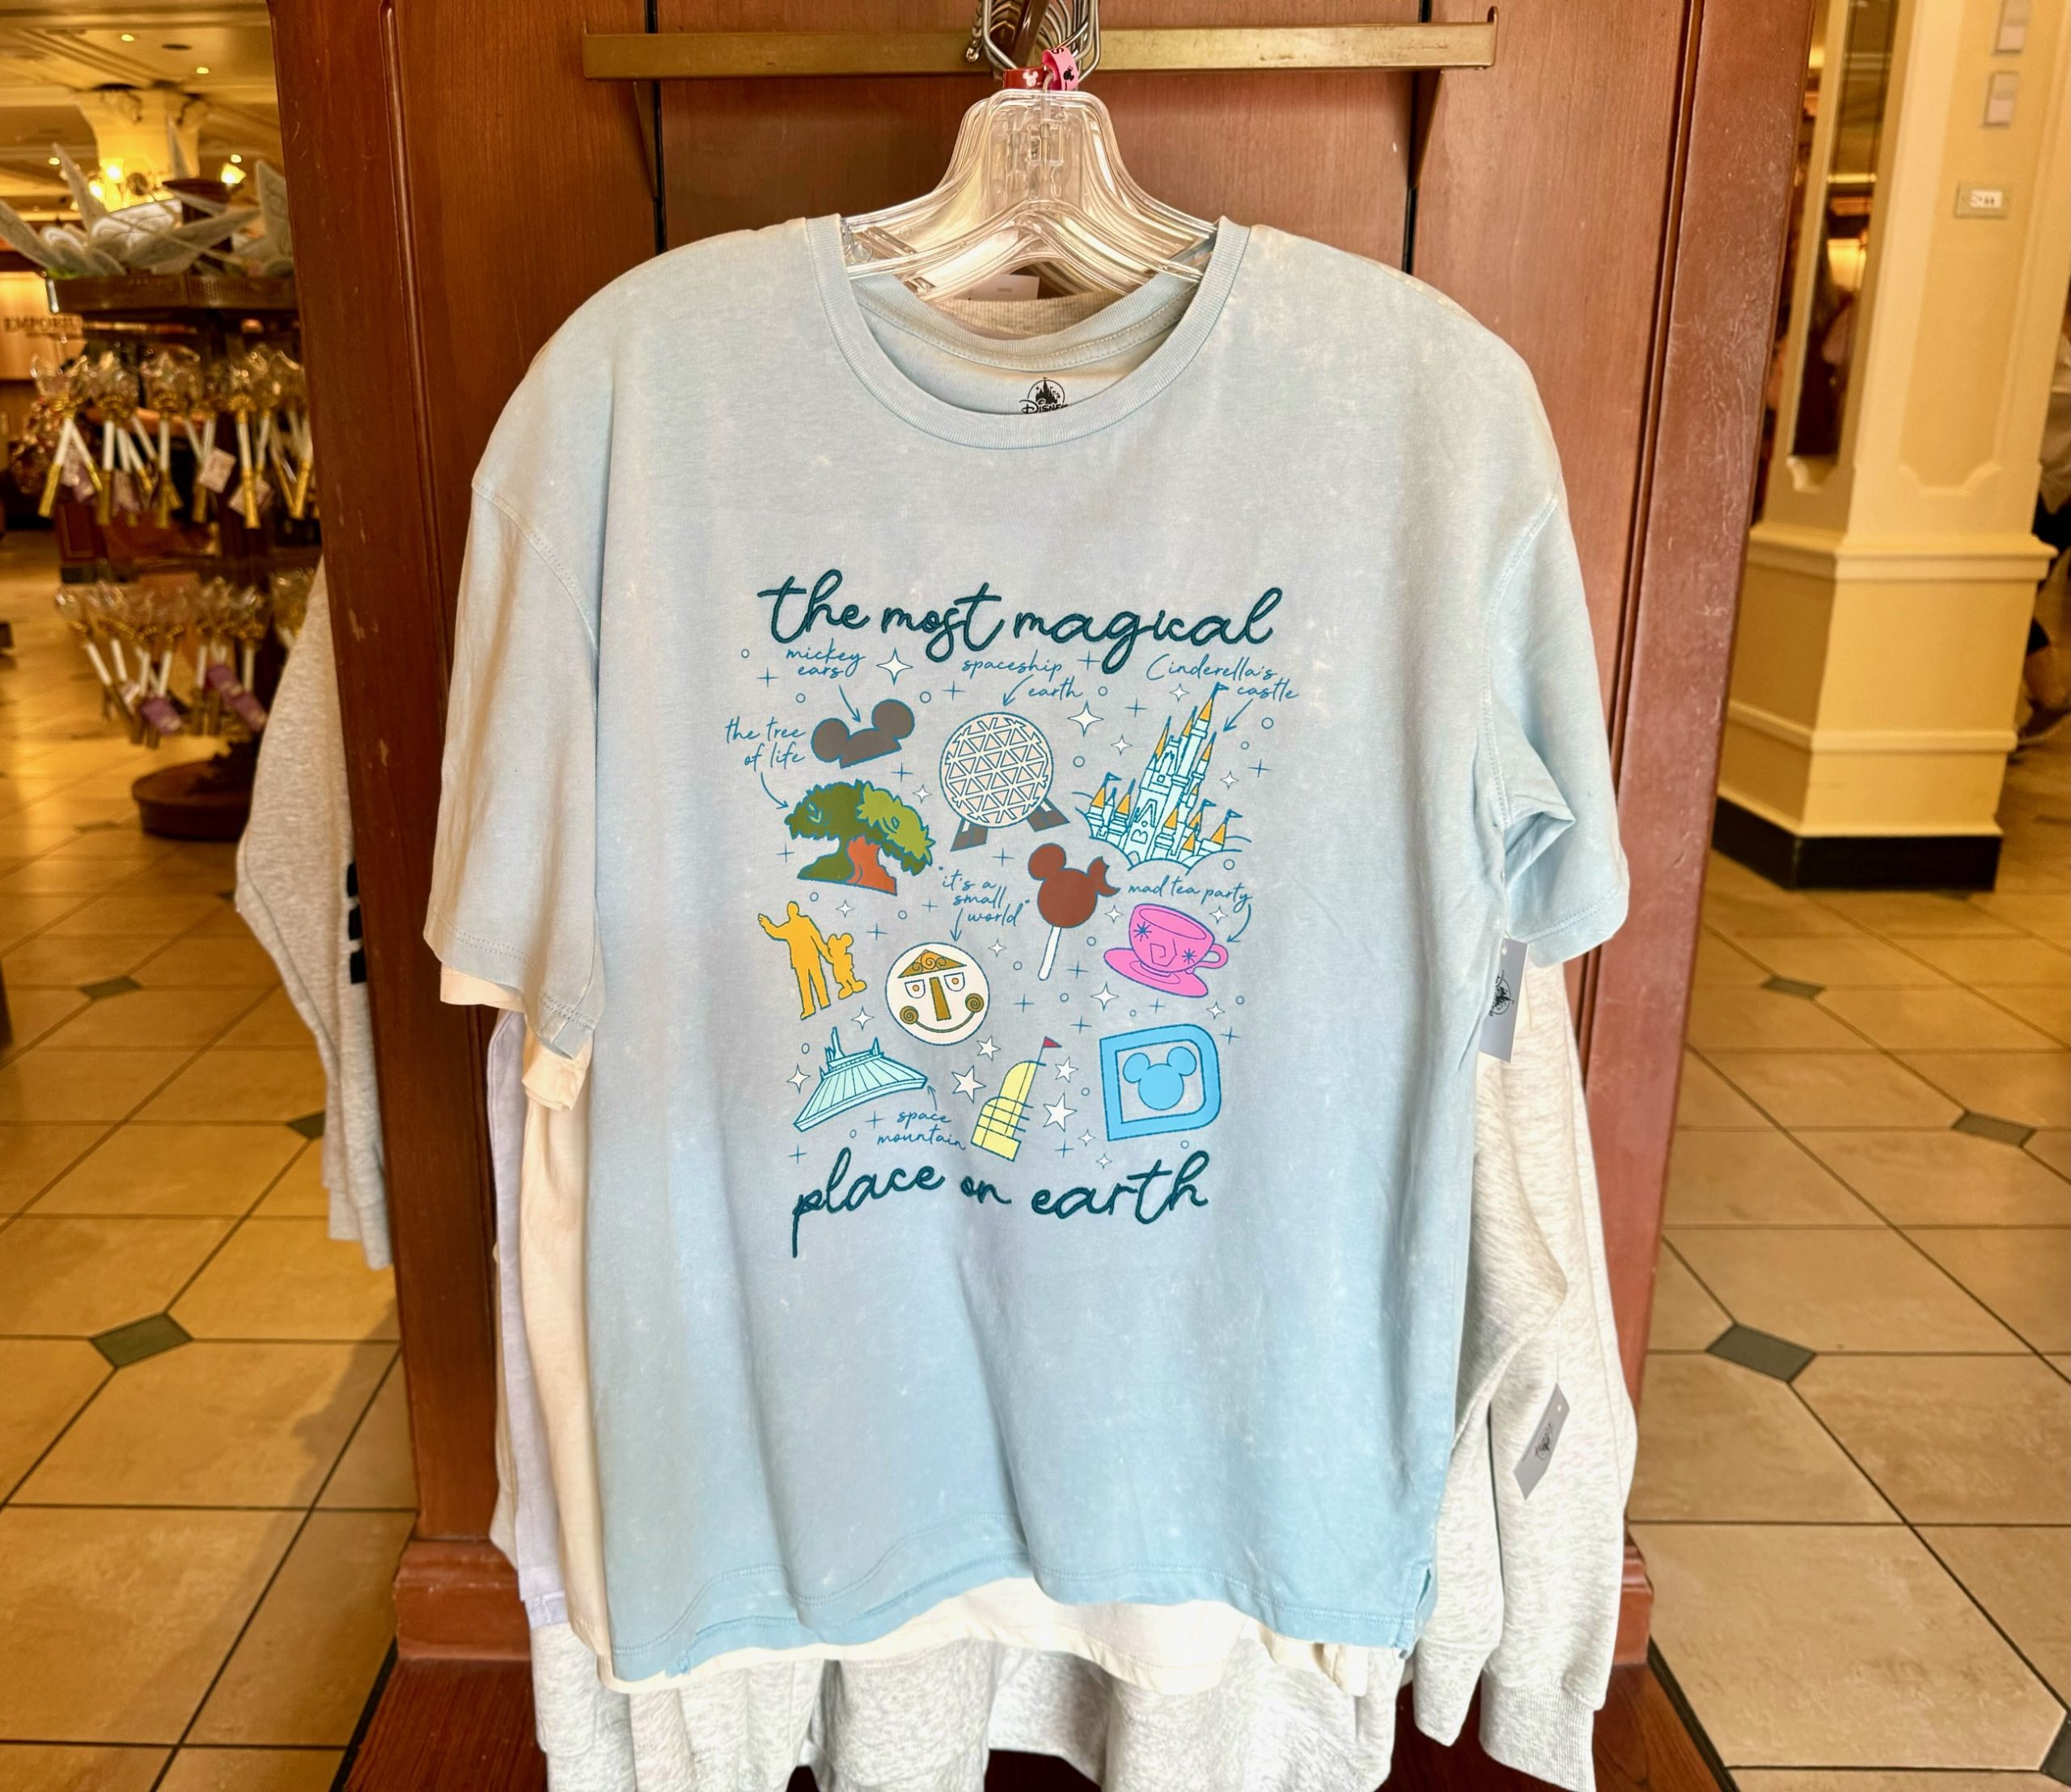 New T-Shirts in Magic Kingdom